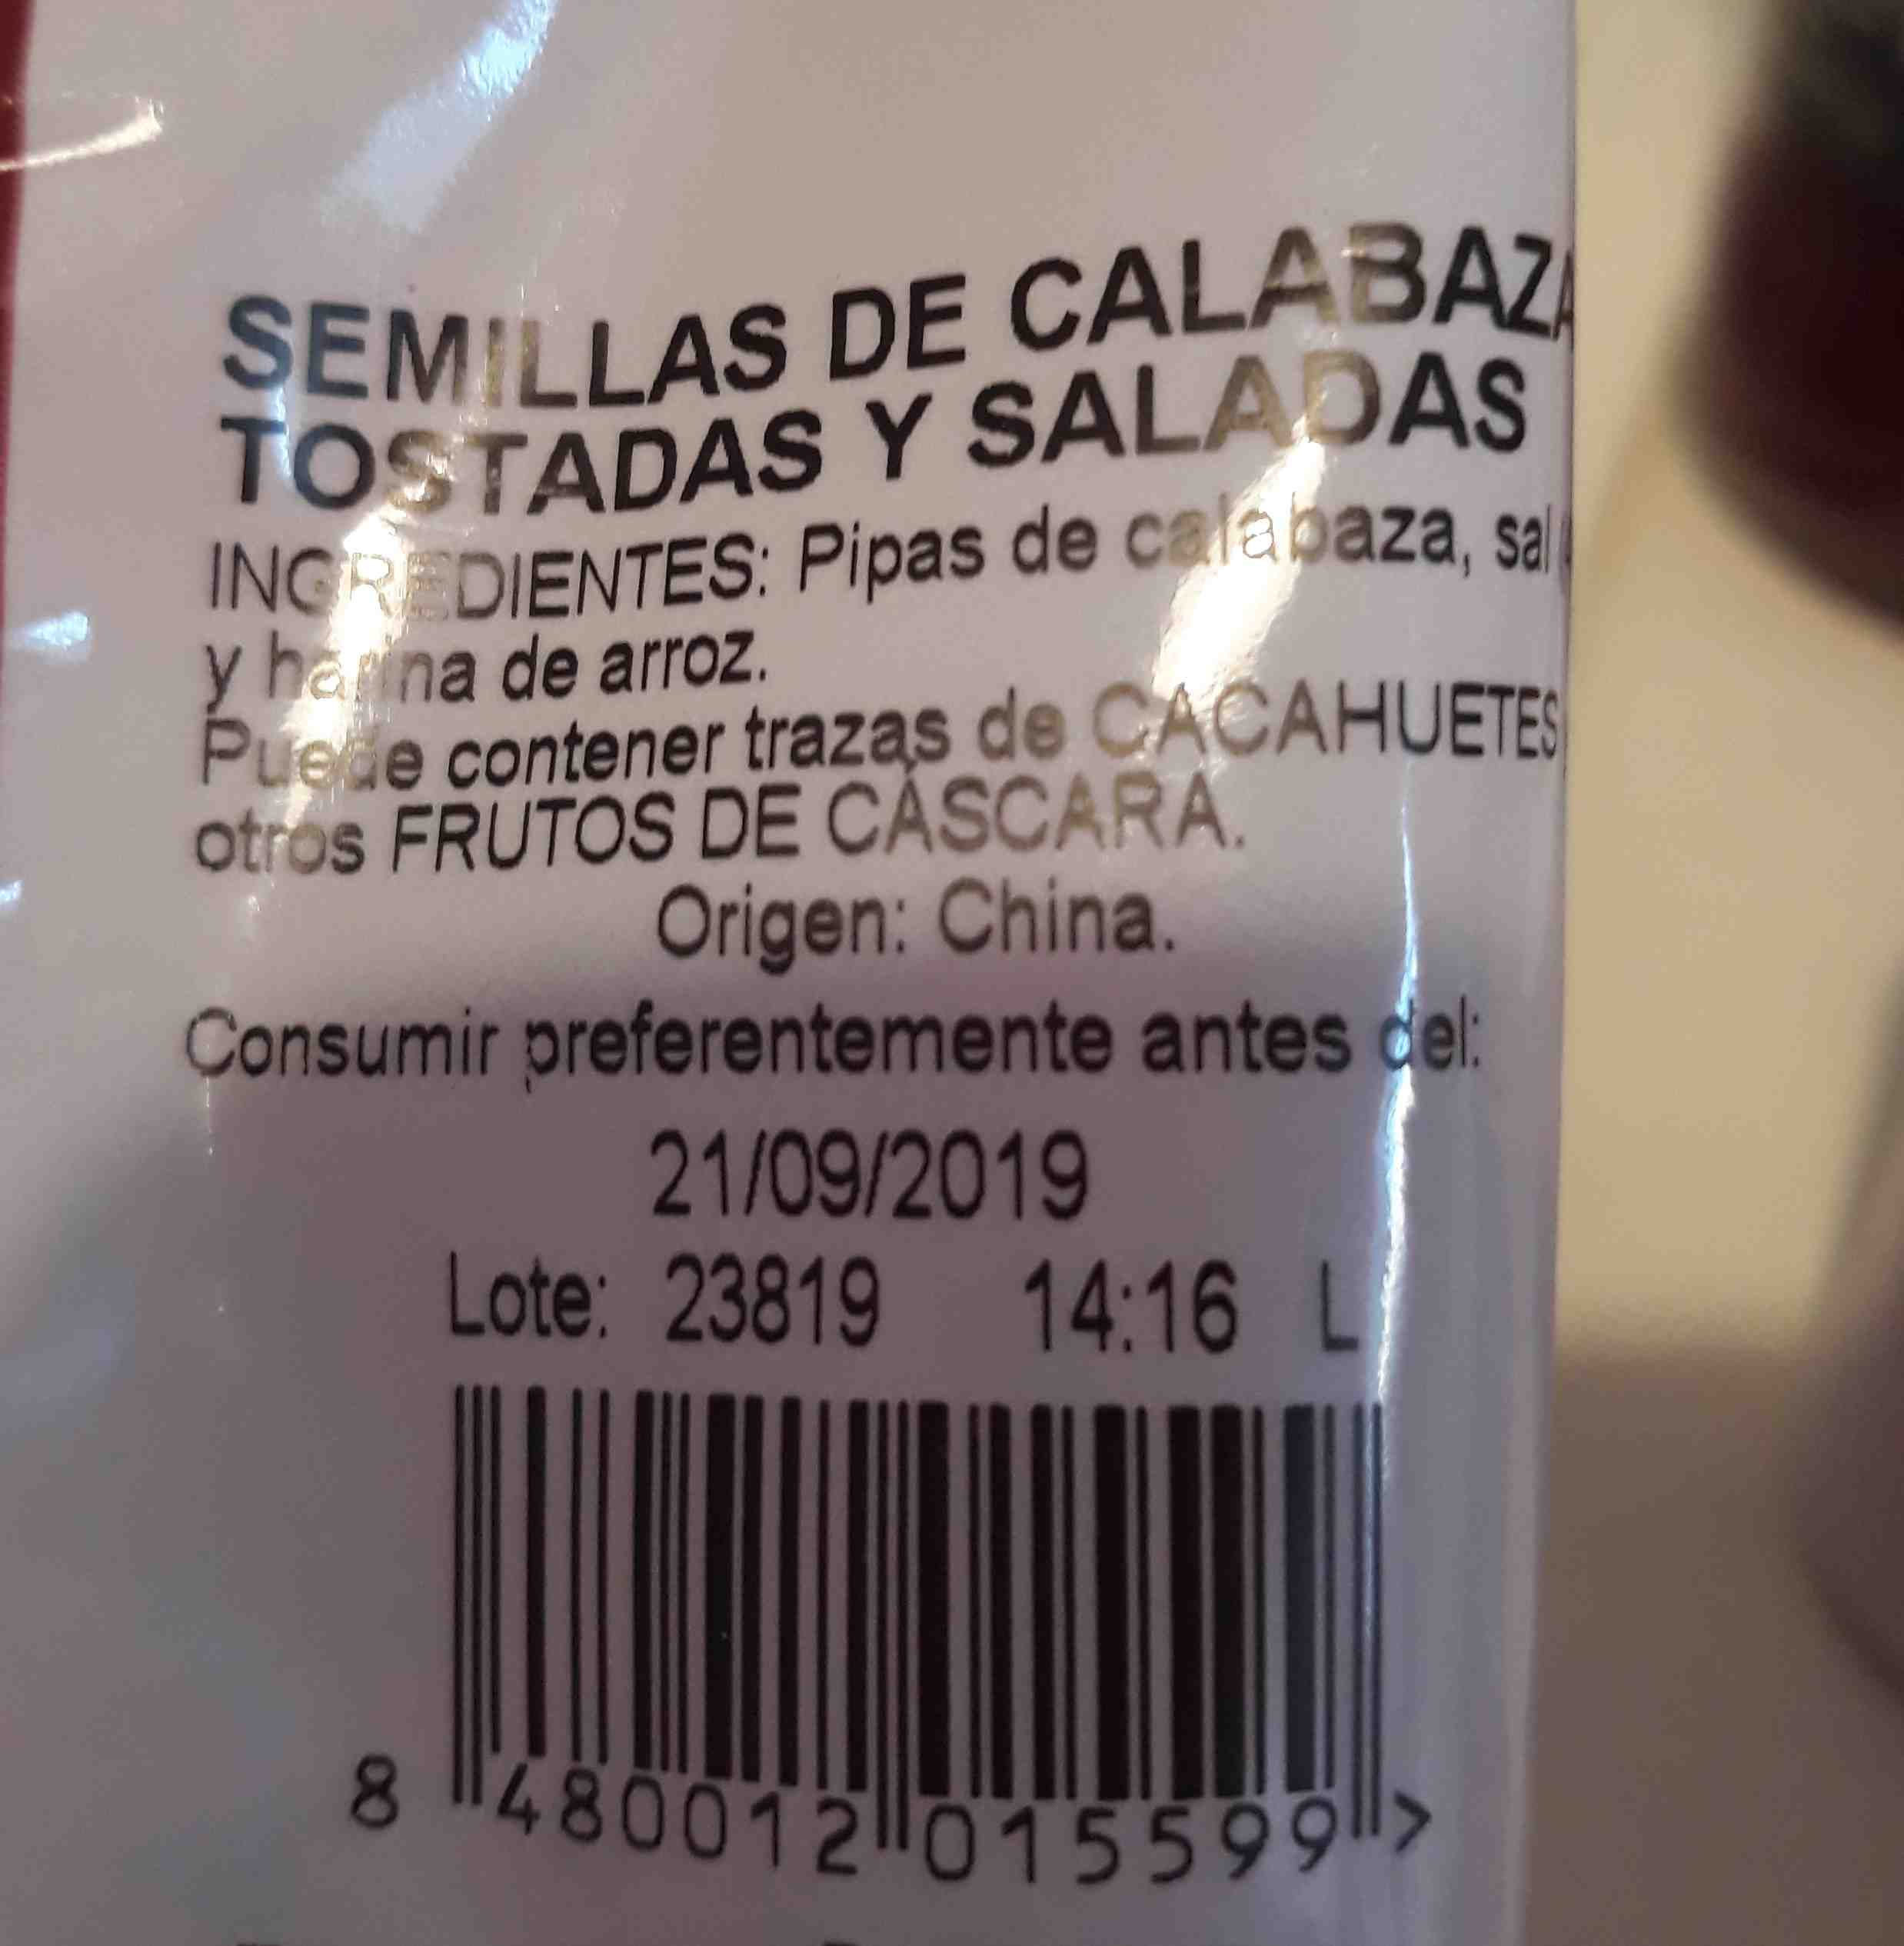 Semillas de calabaza - Ingredients - es